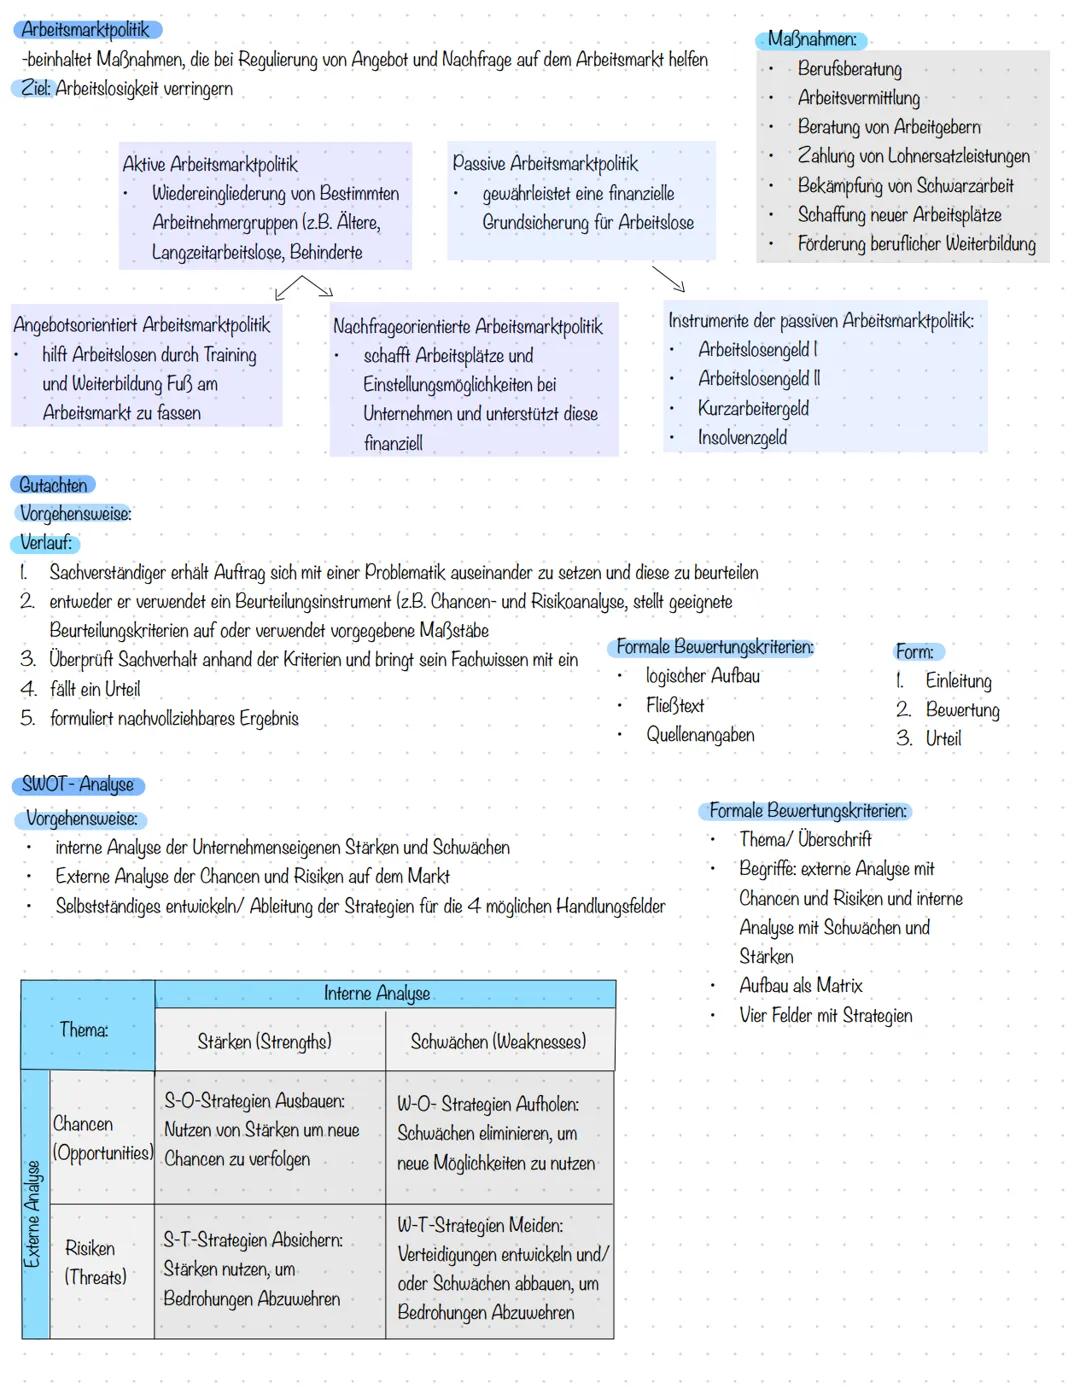 Betriebs-und Volkswirtschaft Marketinglandkarte
SWOT Analyse
Positionierungsstrategien
Produktpolitik
-Produktvariation
Kontrolle des Werbee